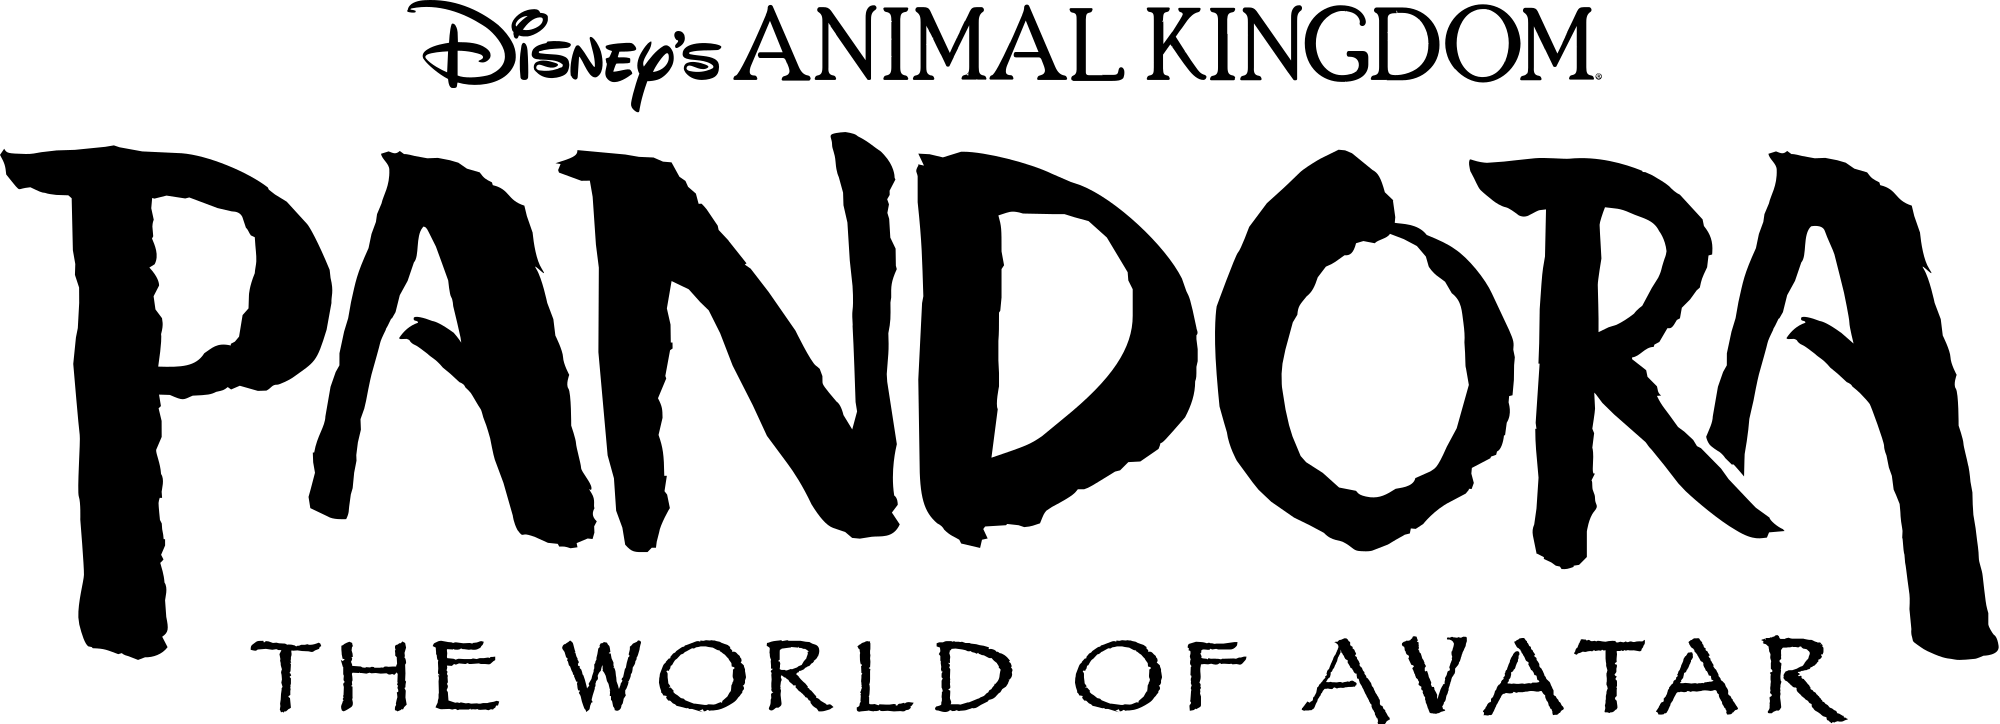 Animal Kingdom Logo Logodix